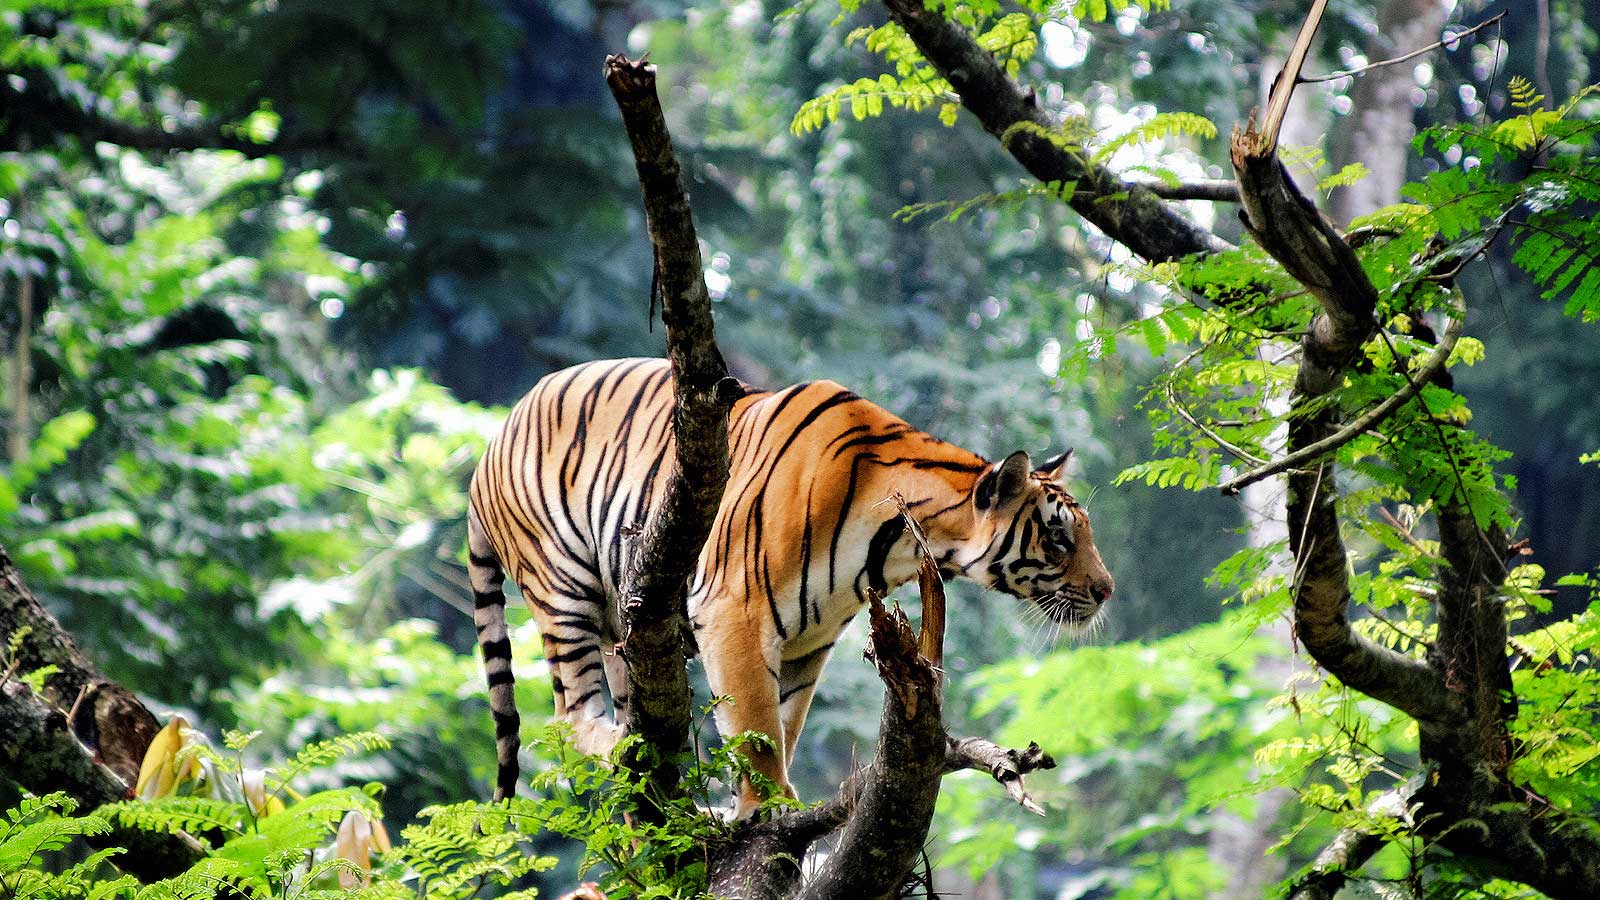 Wild Life in Kerala